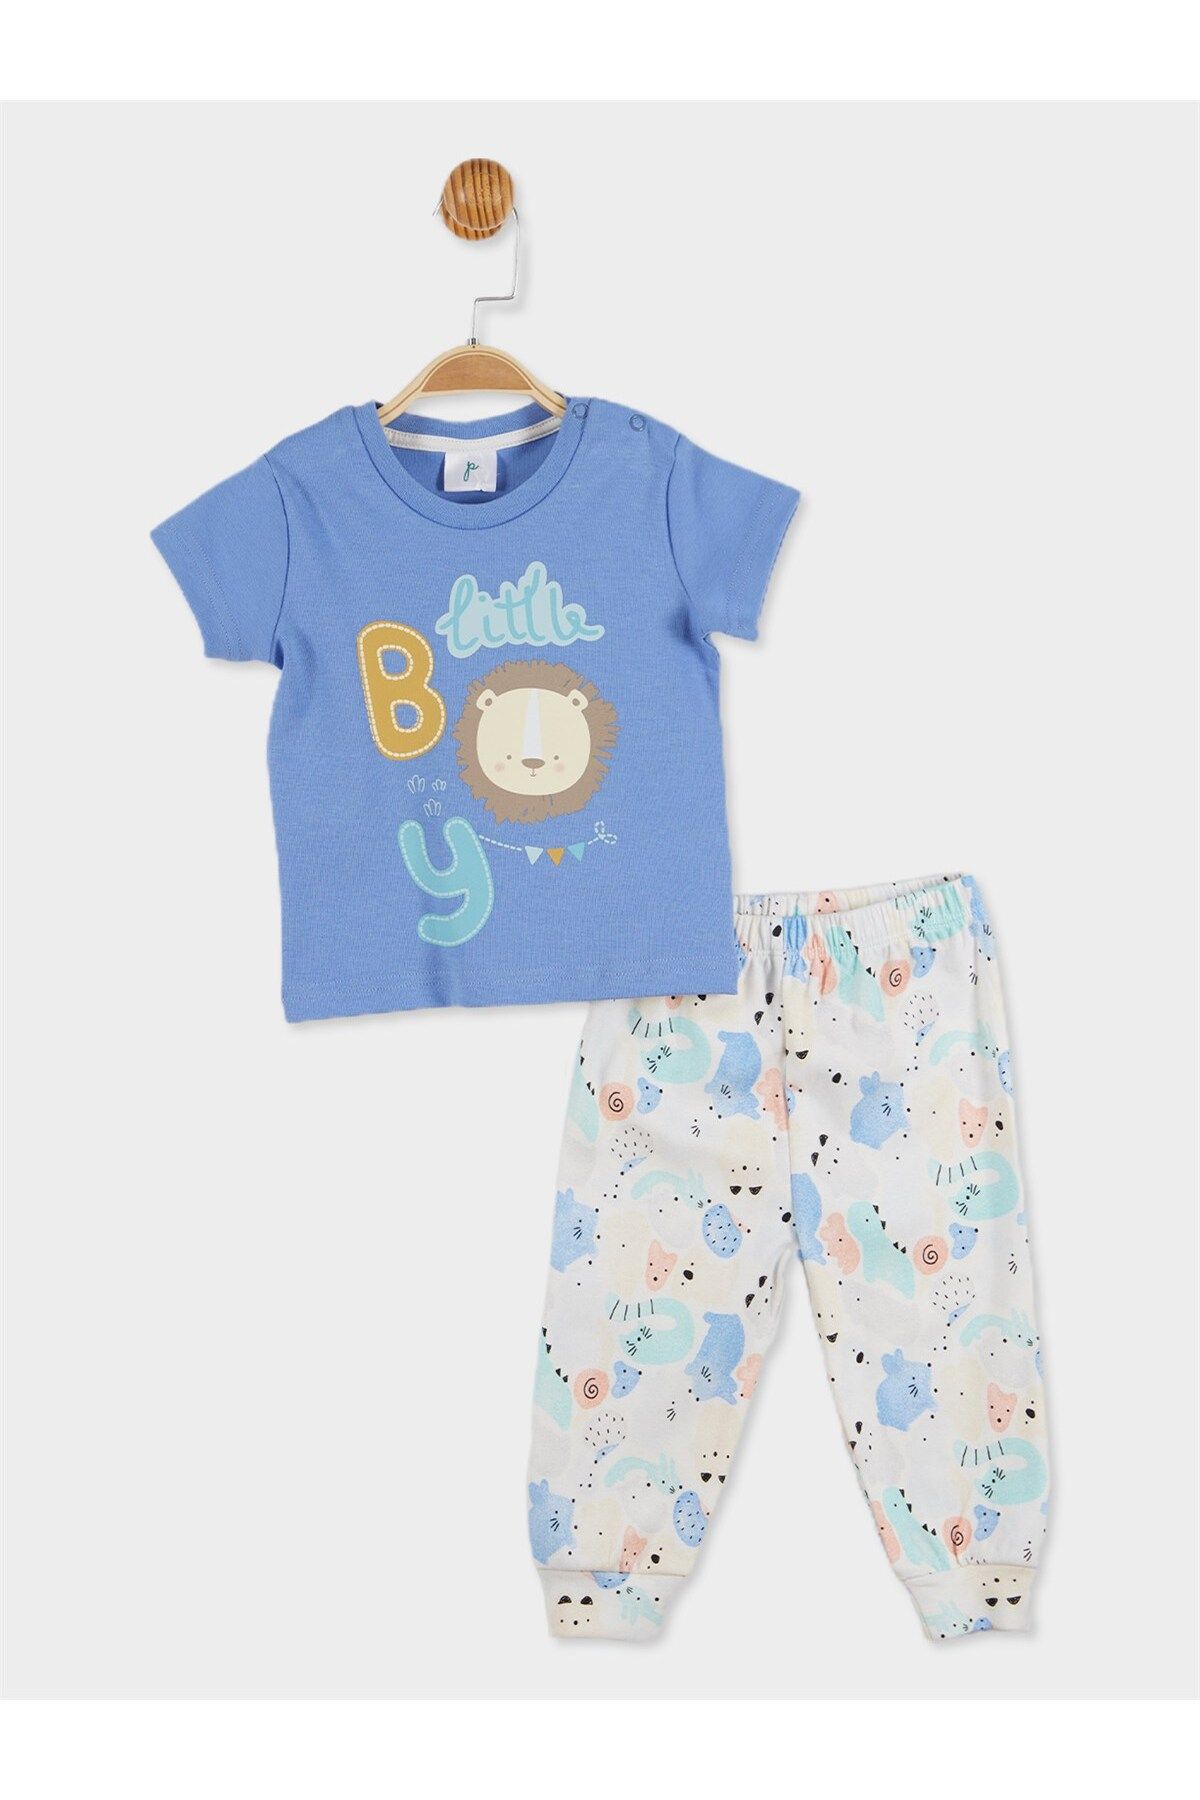 Panolino Erkek Bebek Baskılı Pijama Takımı 20734